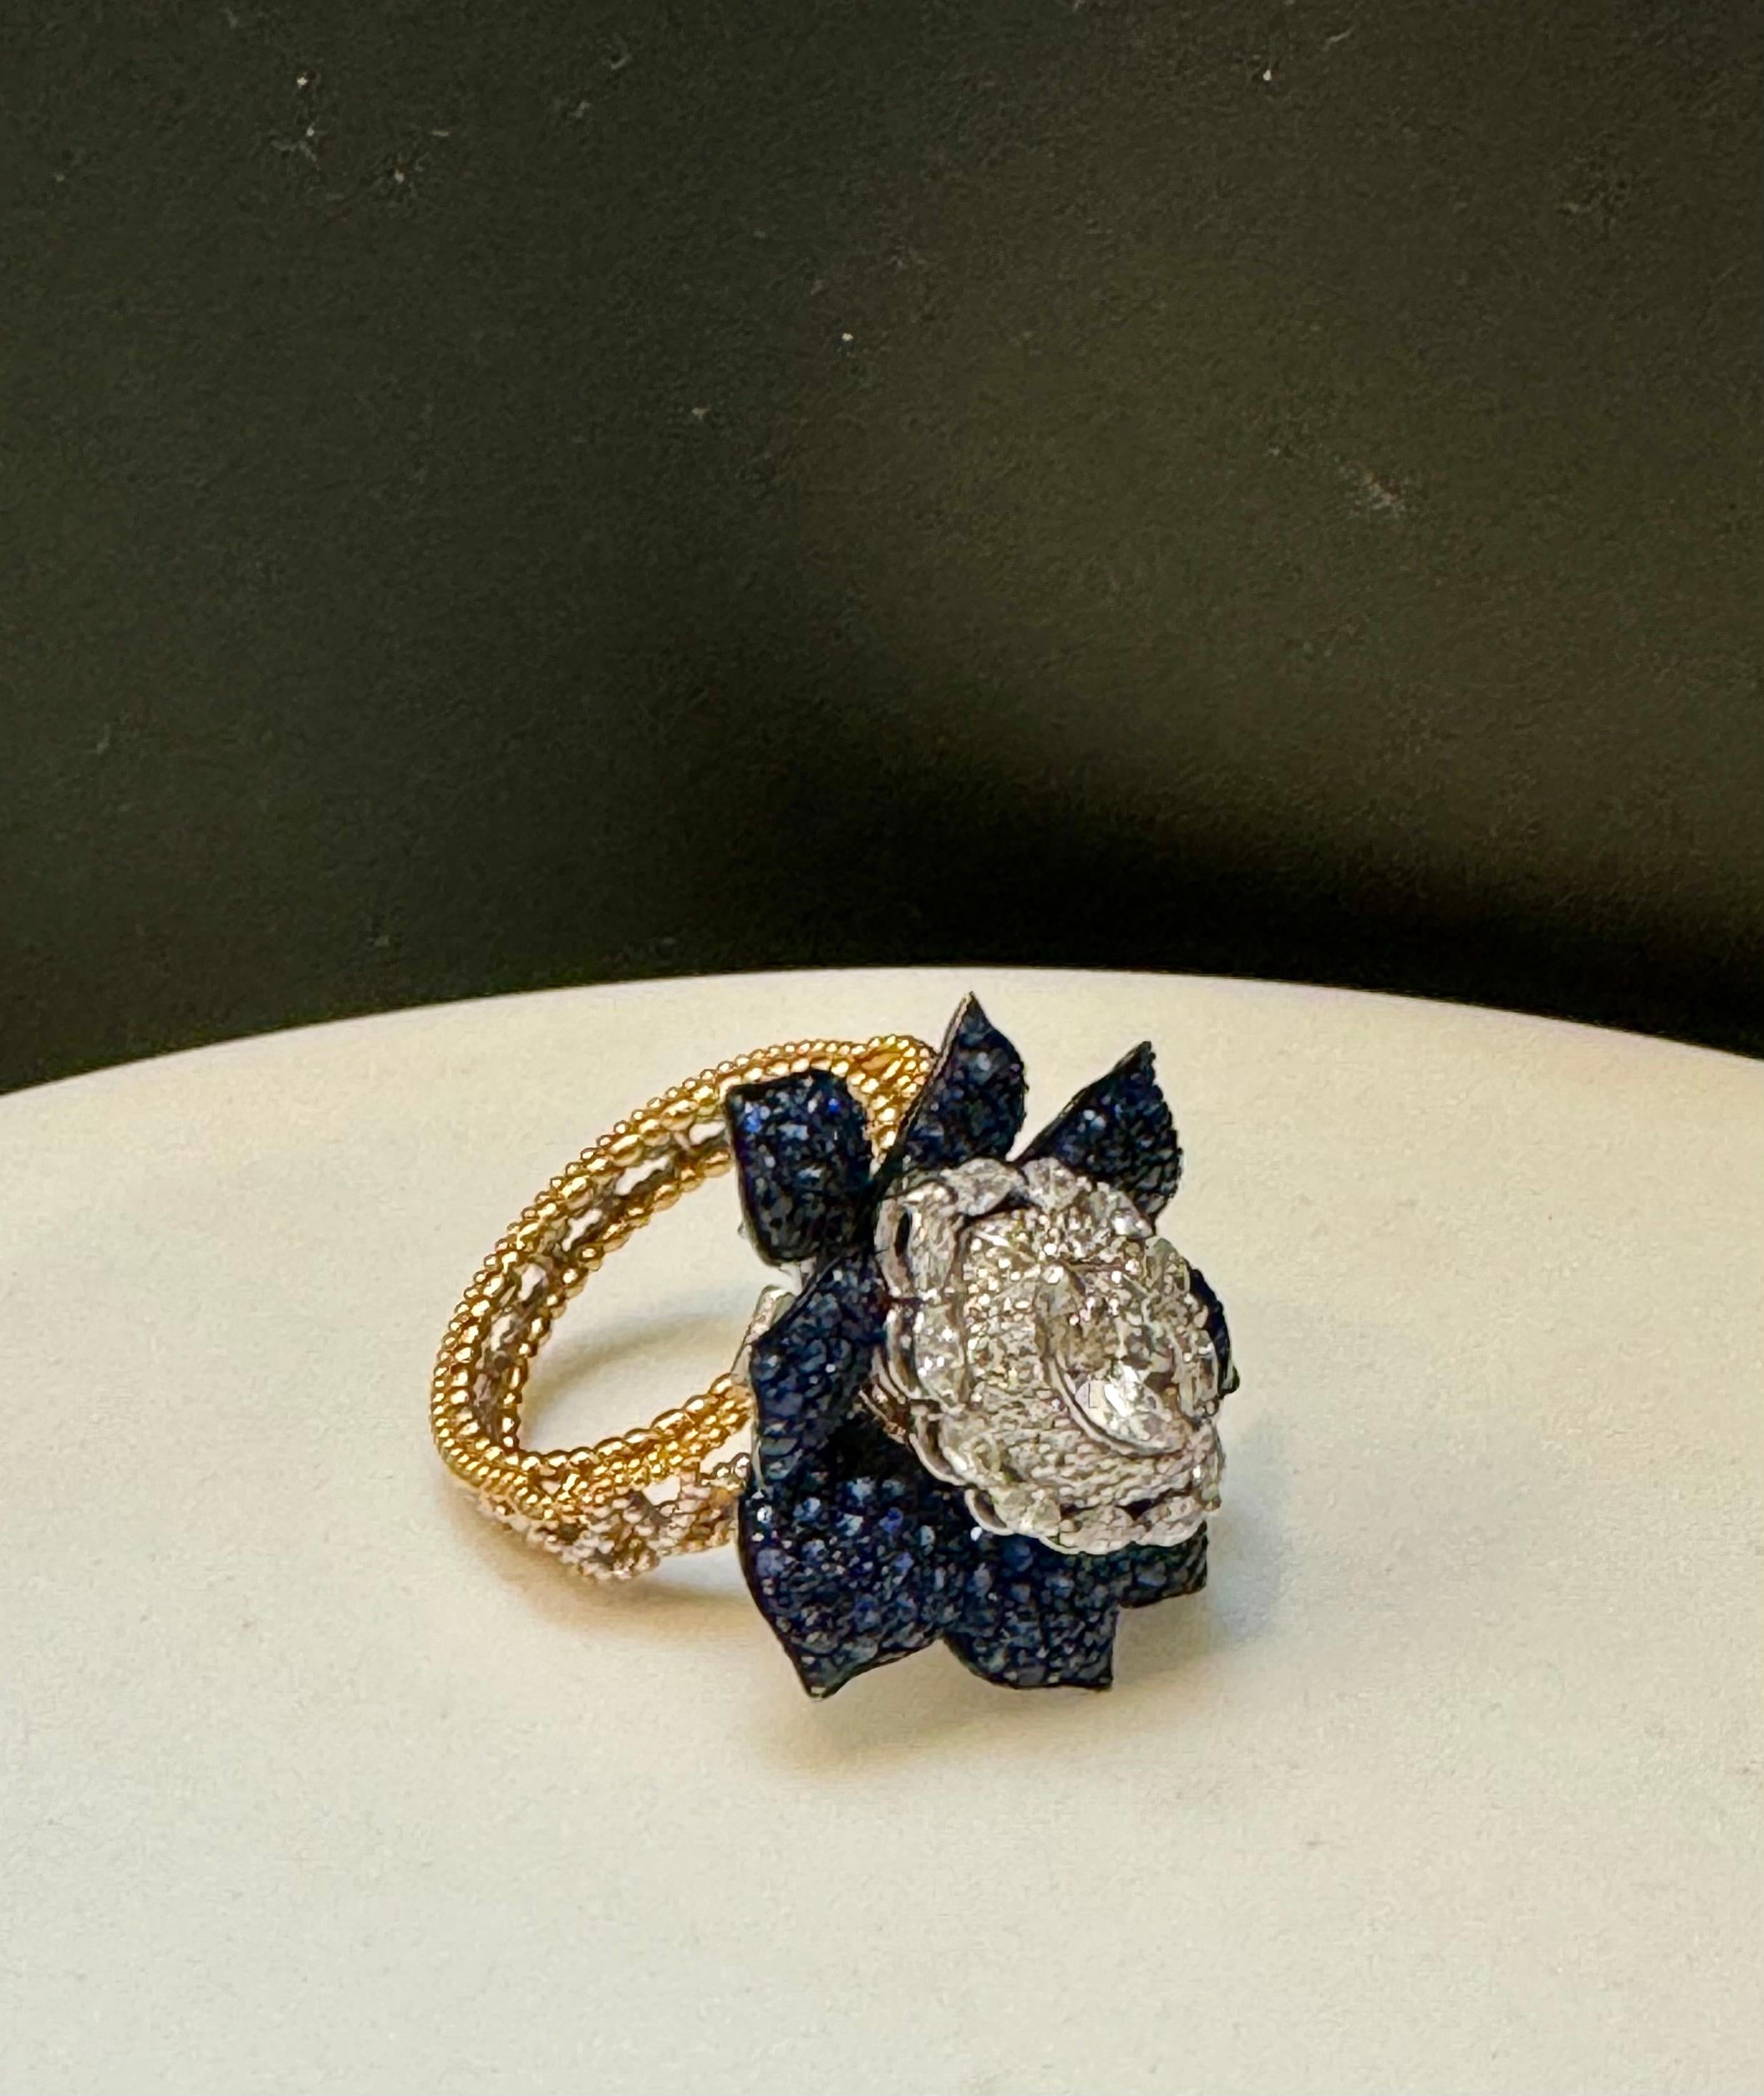 
3 Karat Blauer Saphir & 1,5 Karat Diamant Cocktail Ring in 18 Kt Zwei-Ton  Gold  Größe 7
Schöner Blumenring
Zweifarbiger Ring, da das Band aus Gelbgold und der obere Teil des Rings aus Weißgold besteht.
Blaue Saphire in Pave-Fassung bilden die